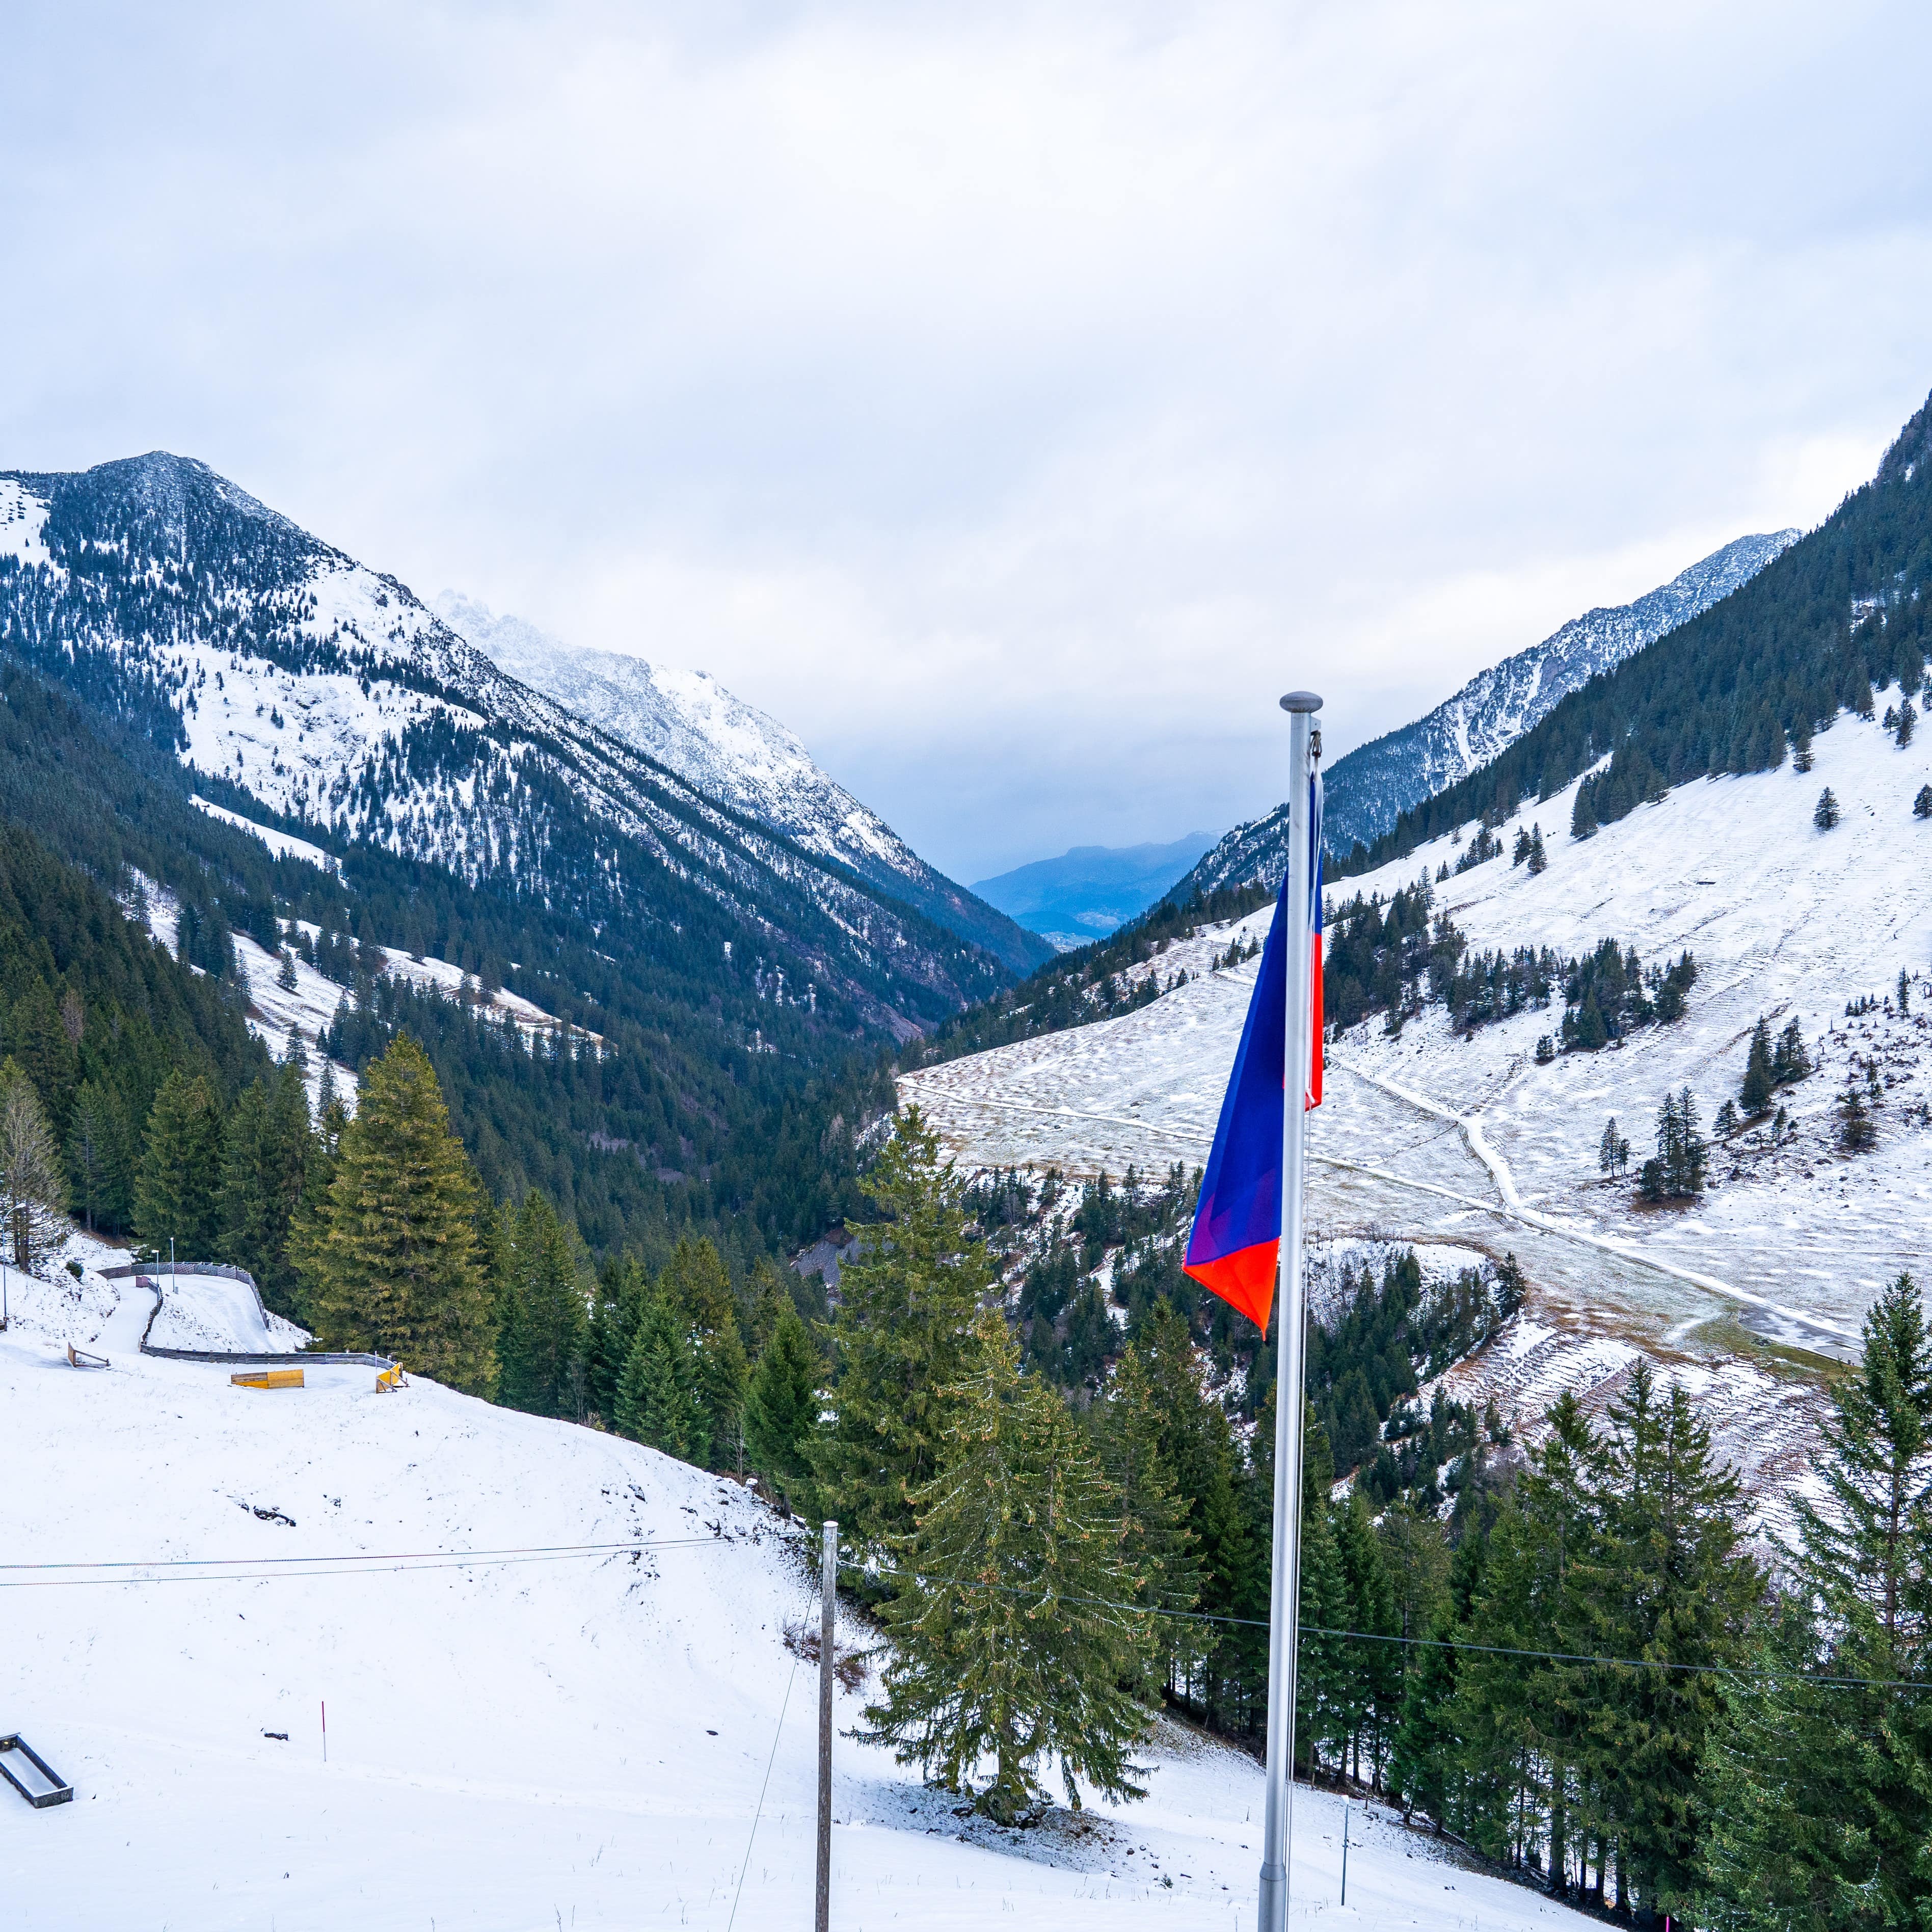 Blick über das verschneite und bewaldete Skigebiet Malbun, die Liechtensteiner Flagge im Vordergrund.